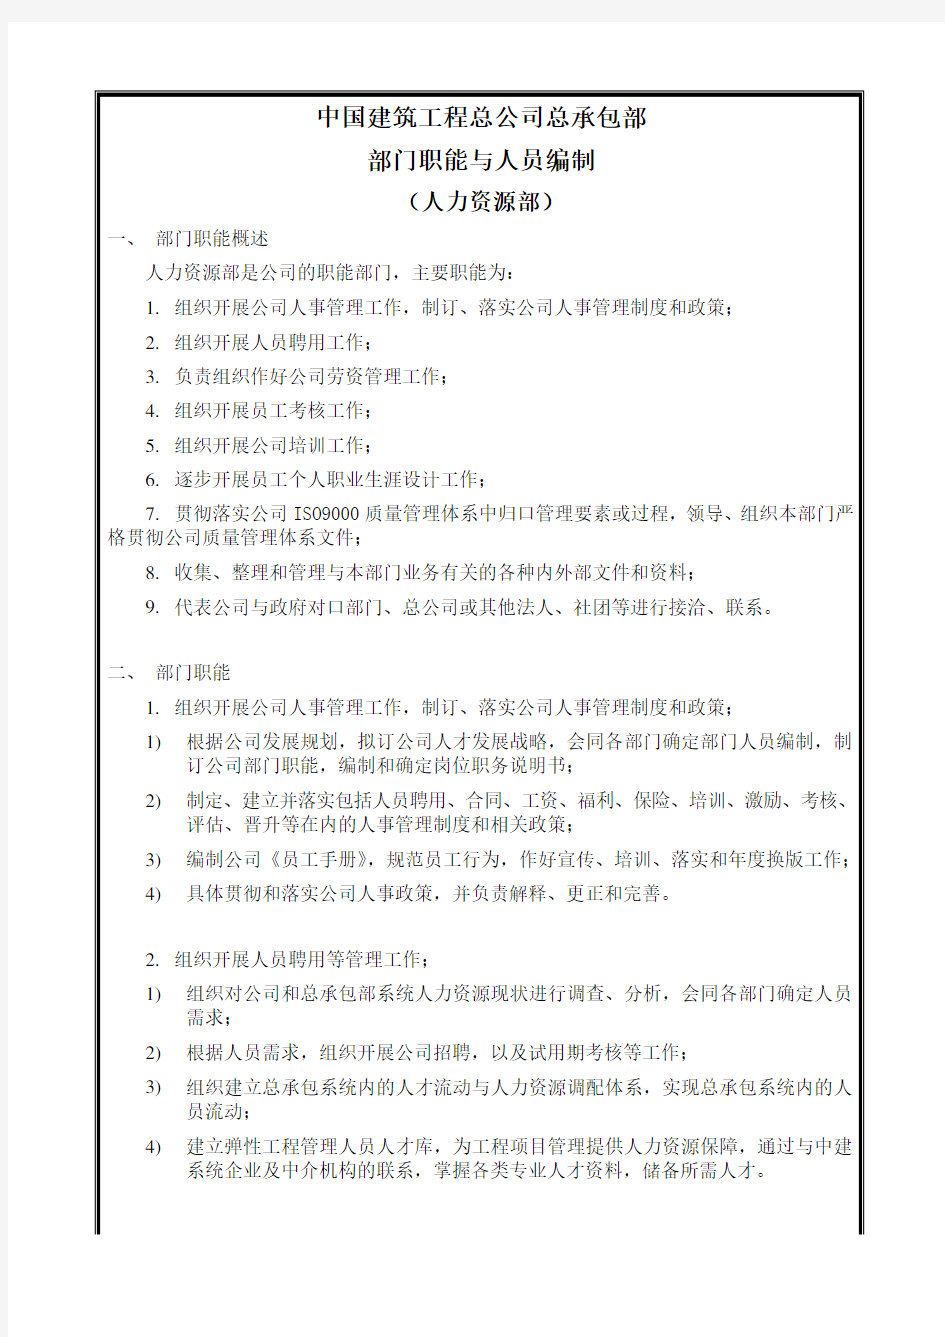 中国建筑工程总公司部门职能与人员编制